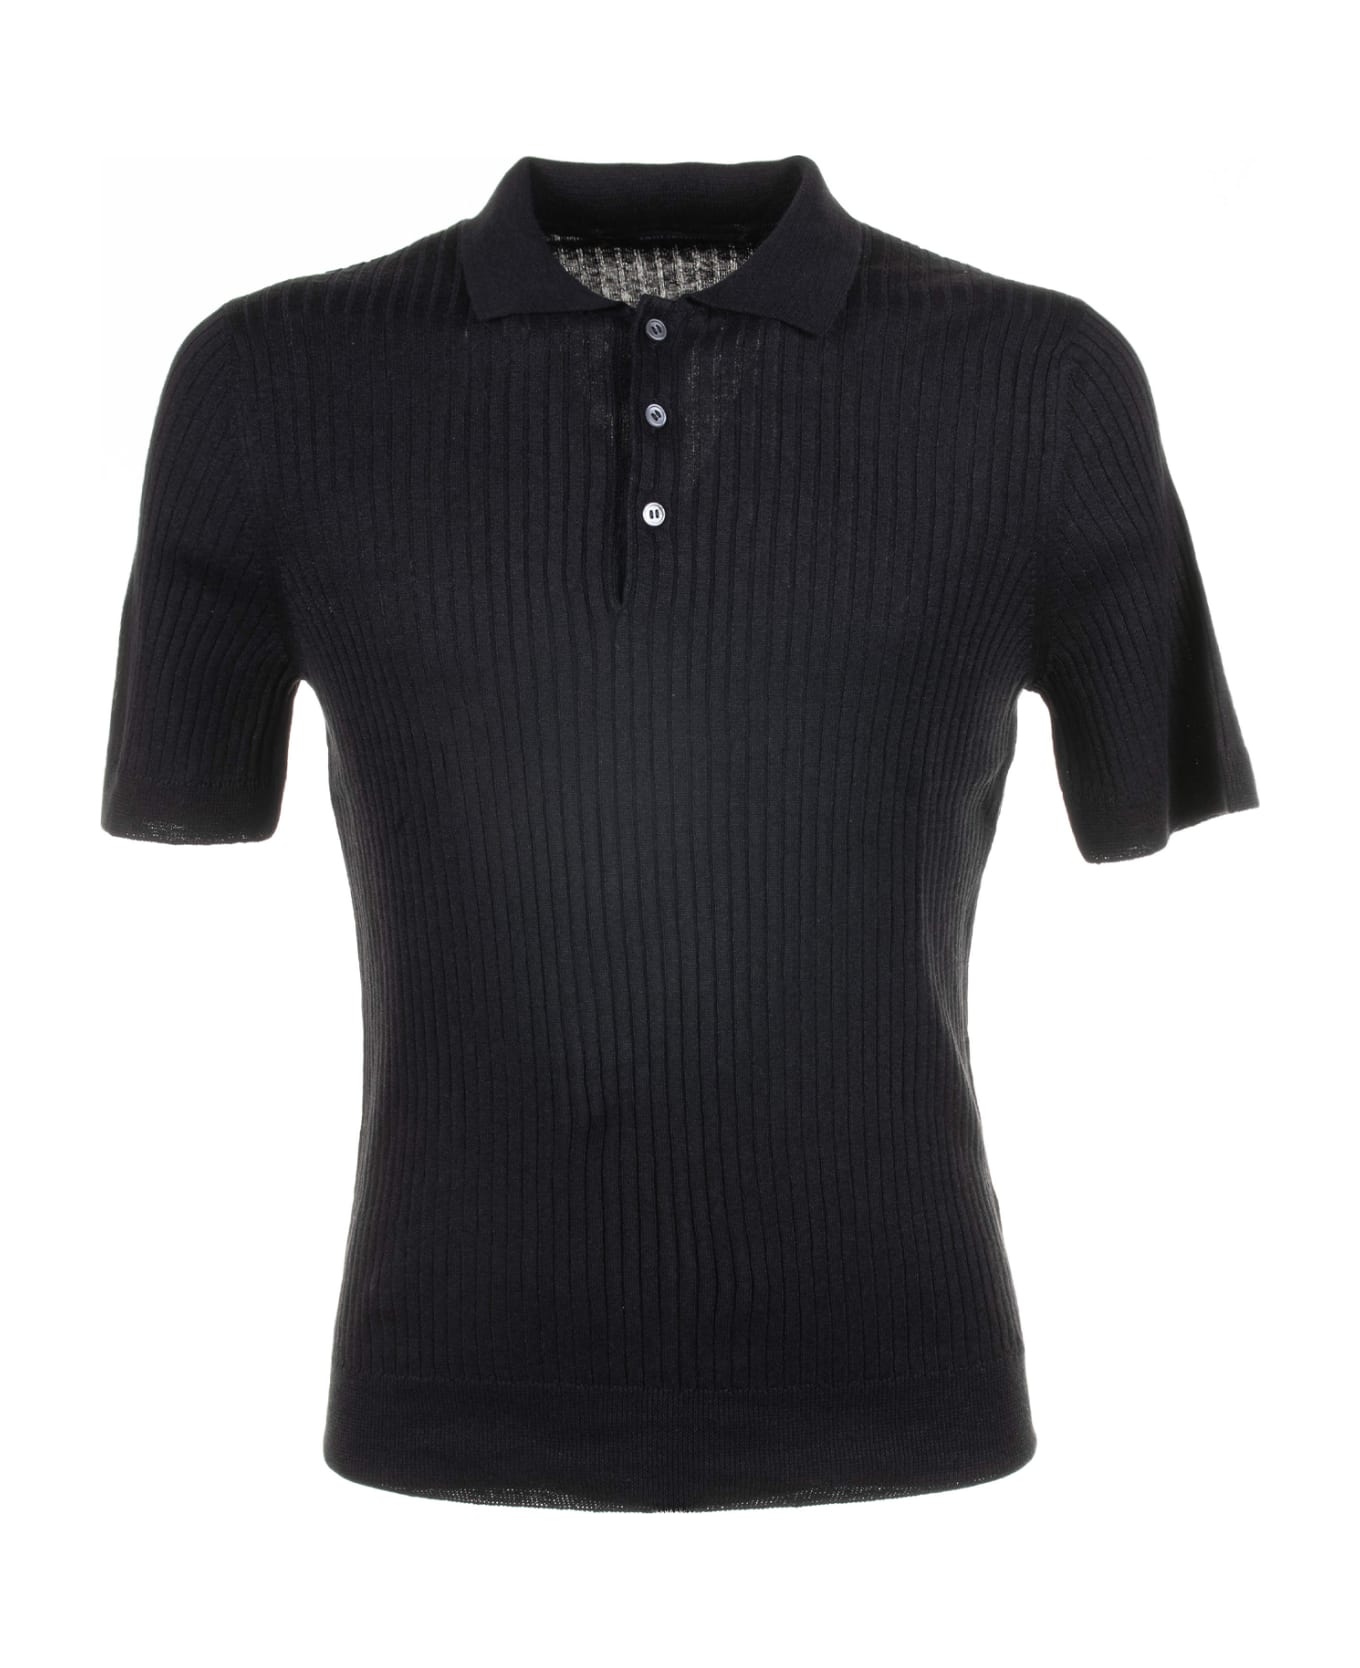 Tagliatore Black Short-sleeved Polo Shirt - NERO